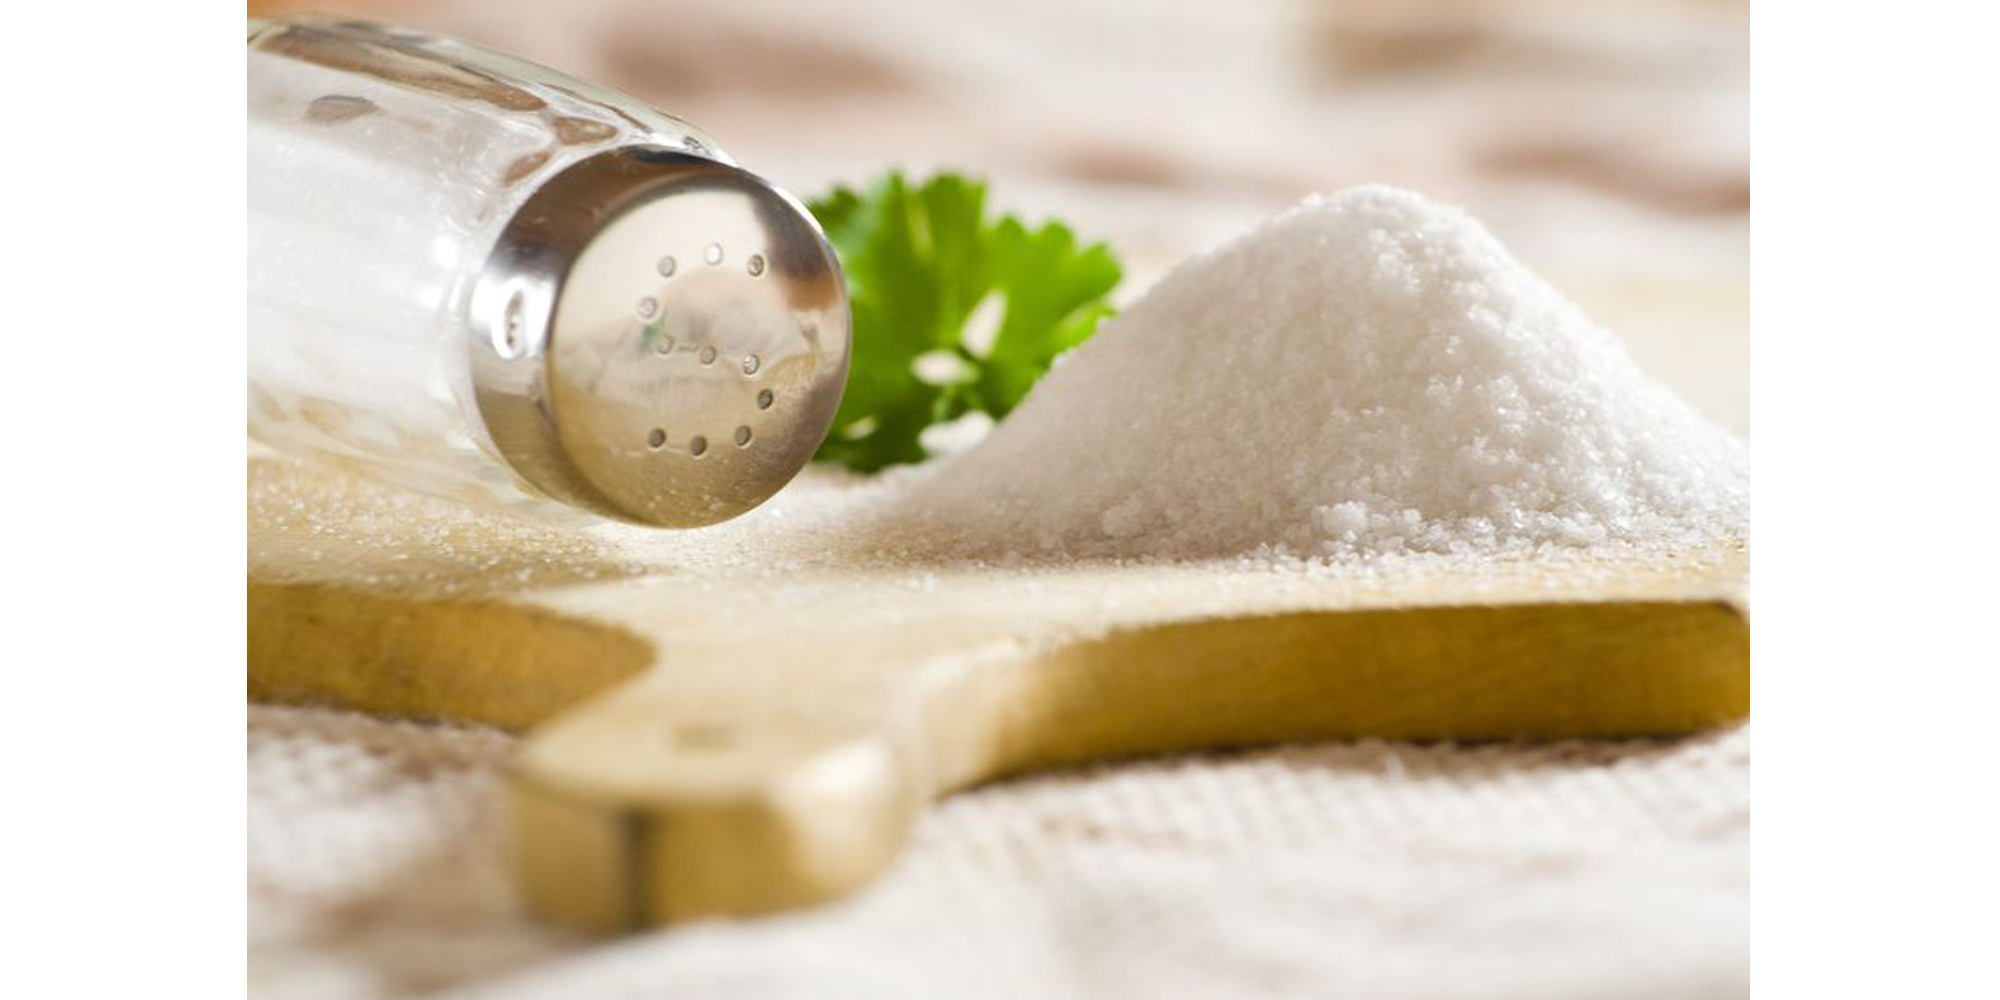 水+食鹽:去除角質和油脂